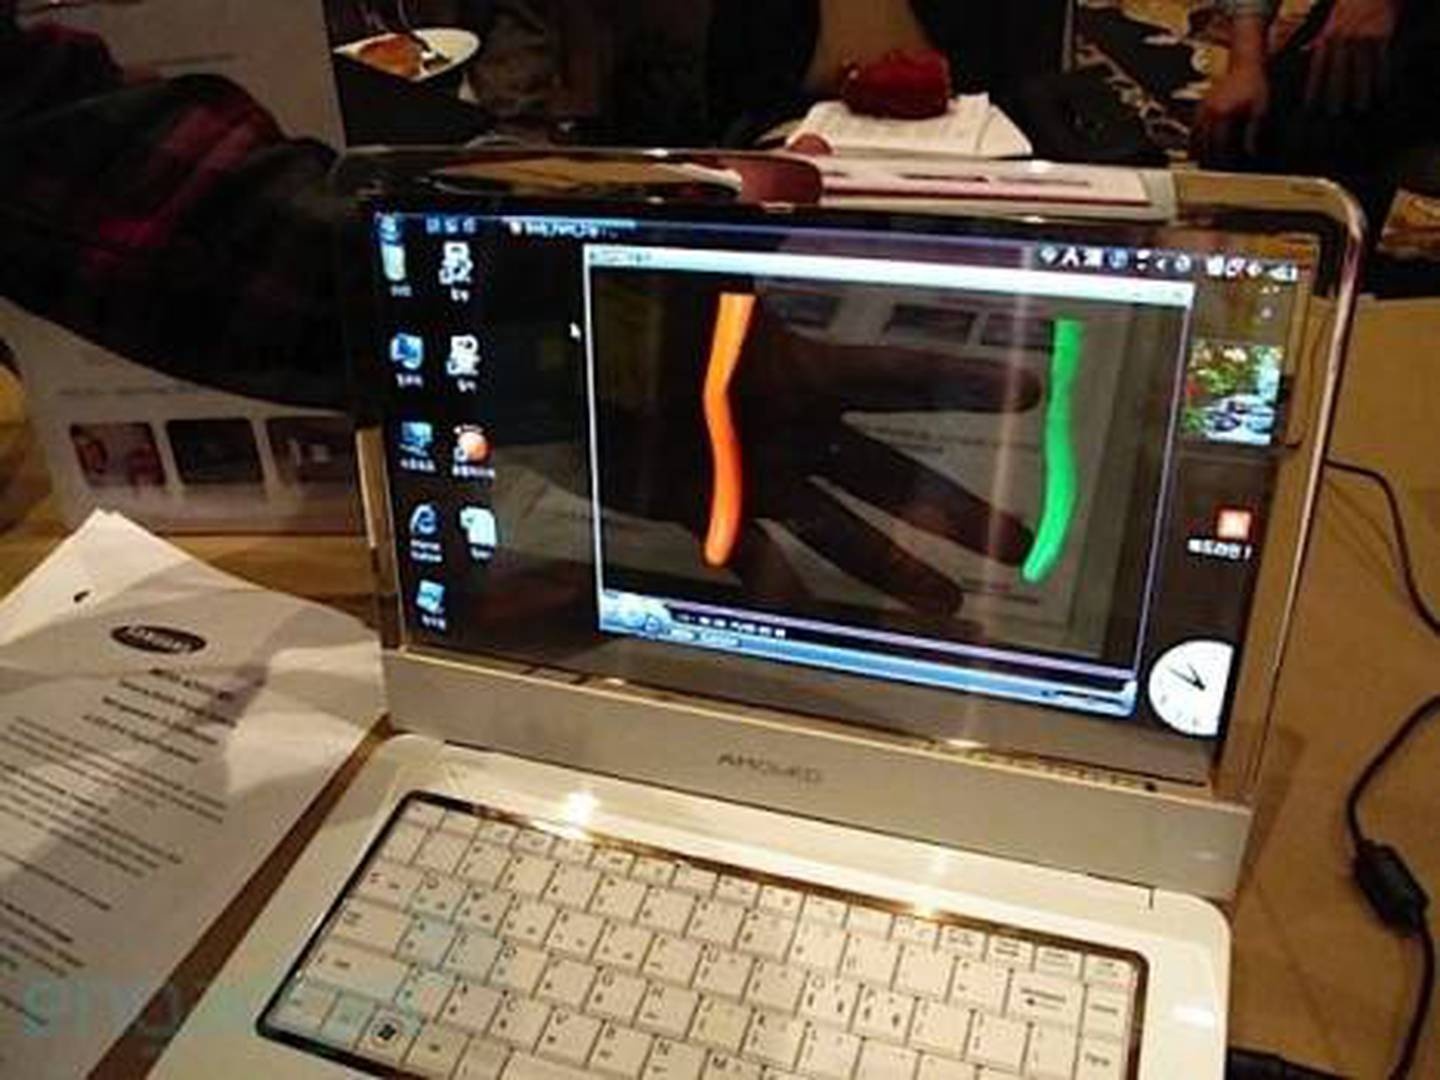 Nguyên mẫu laptop có màn hình trong suốt của Samsung tại CES 2010